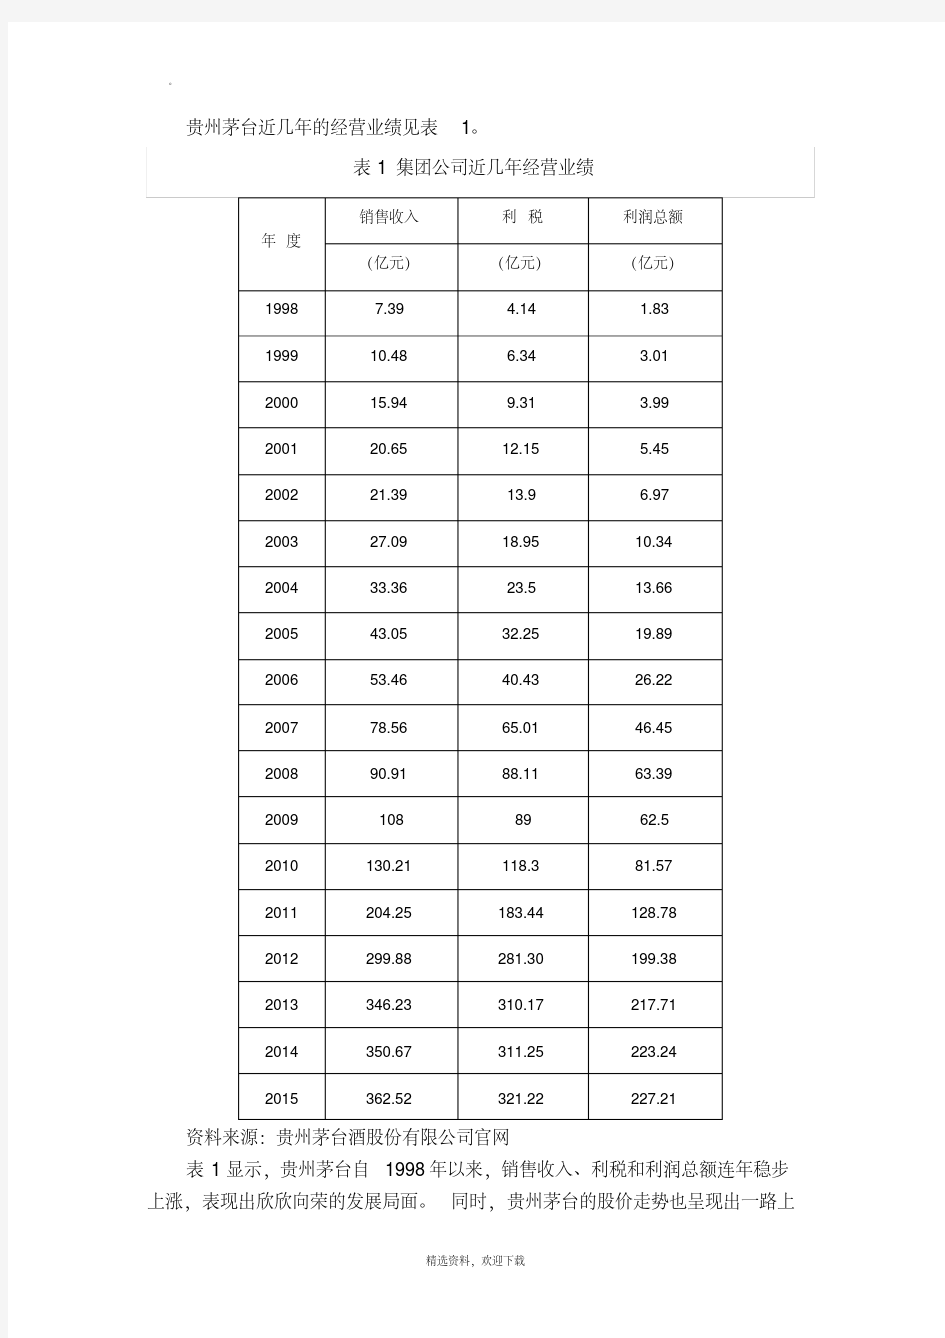 贵州茅台财务报表分析91445